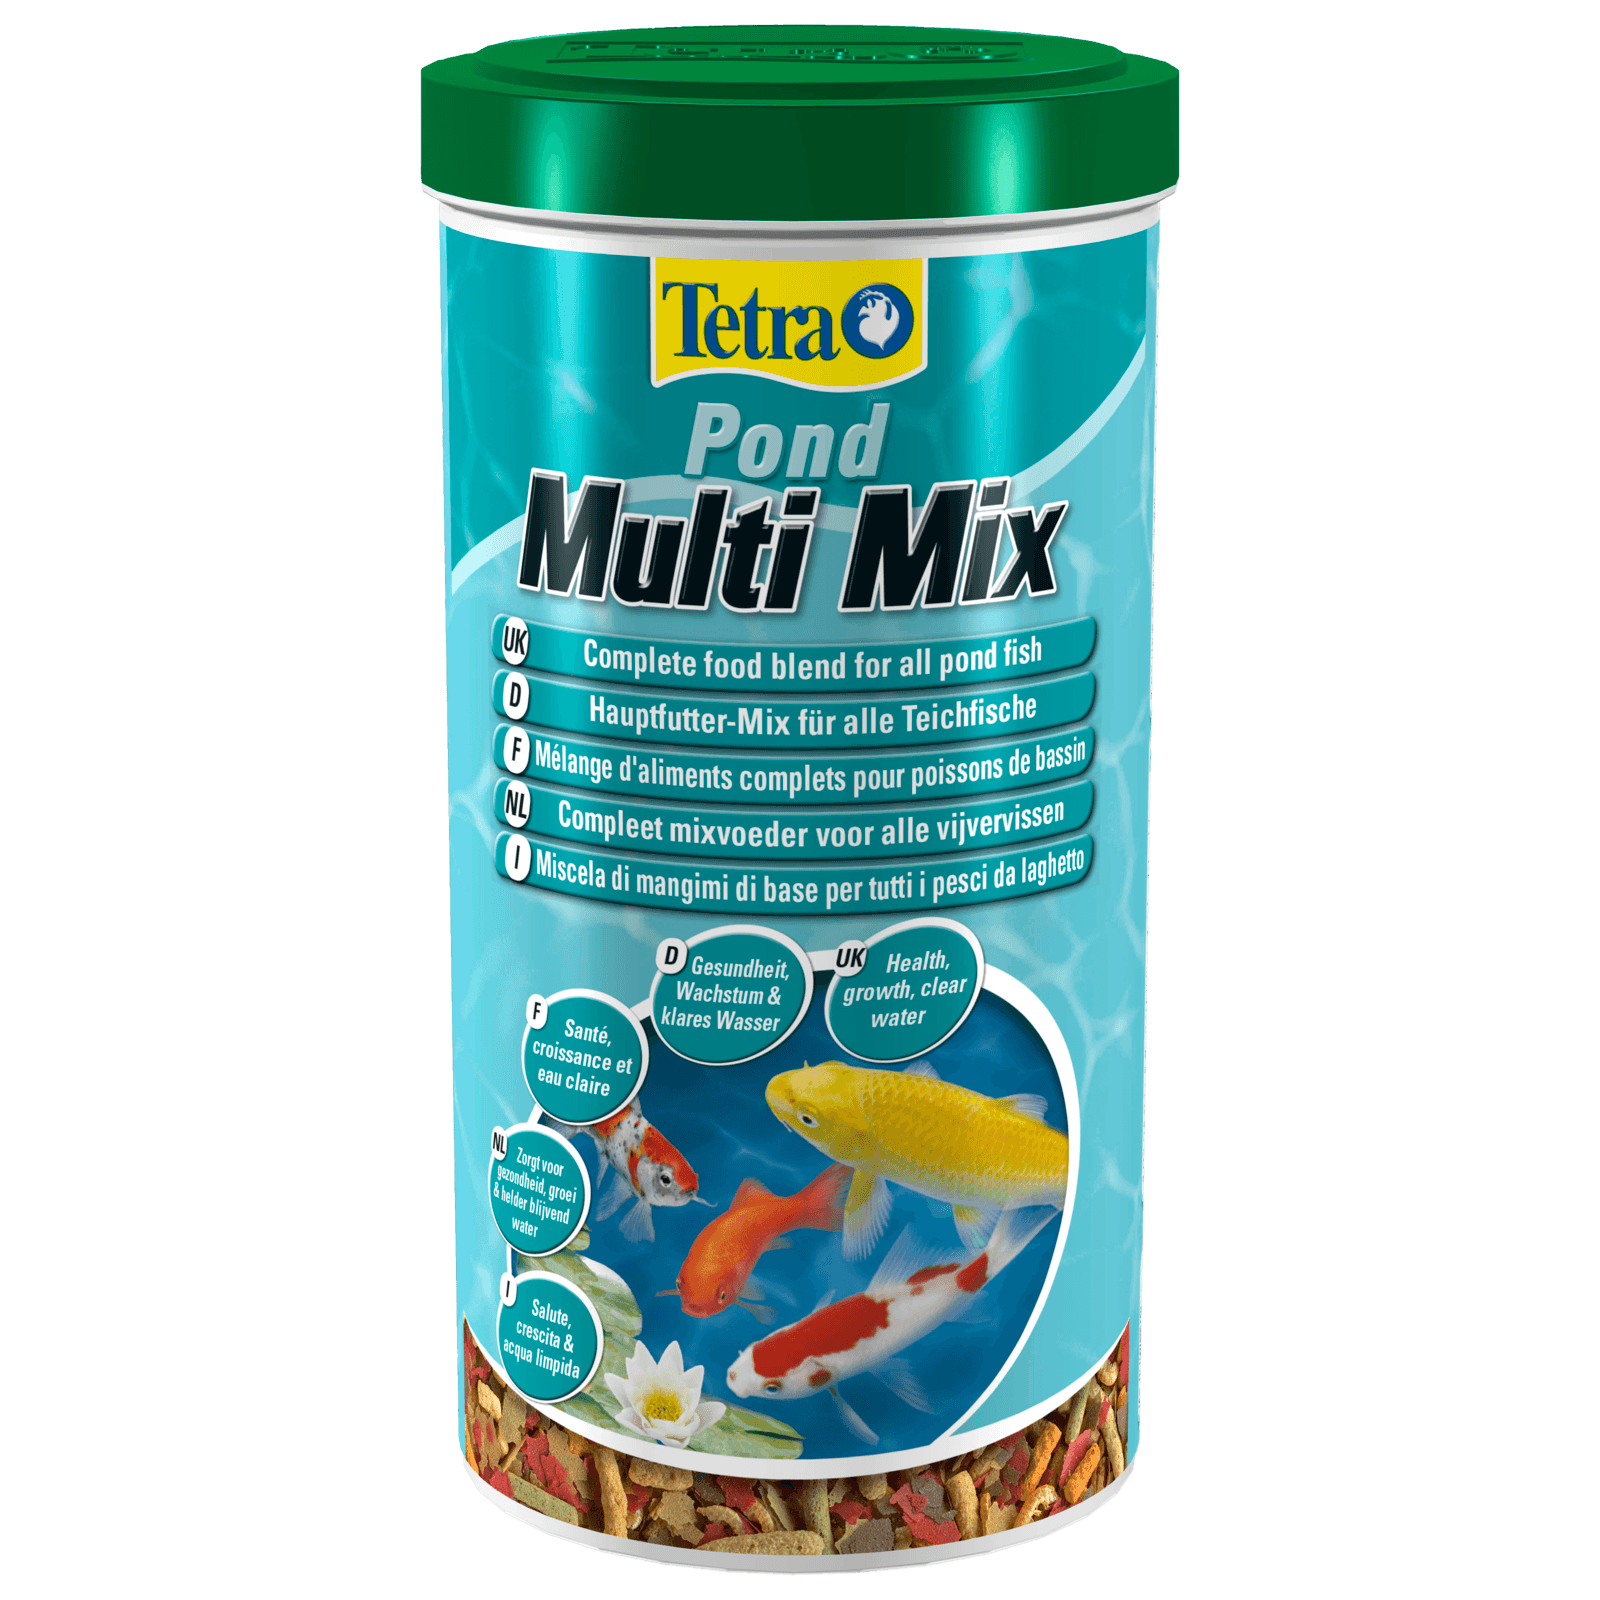 Fischfutter Pond Multi Mix 7L von Tetra, kaufen bei